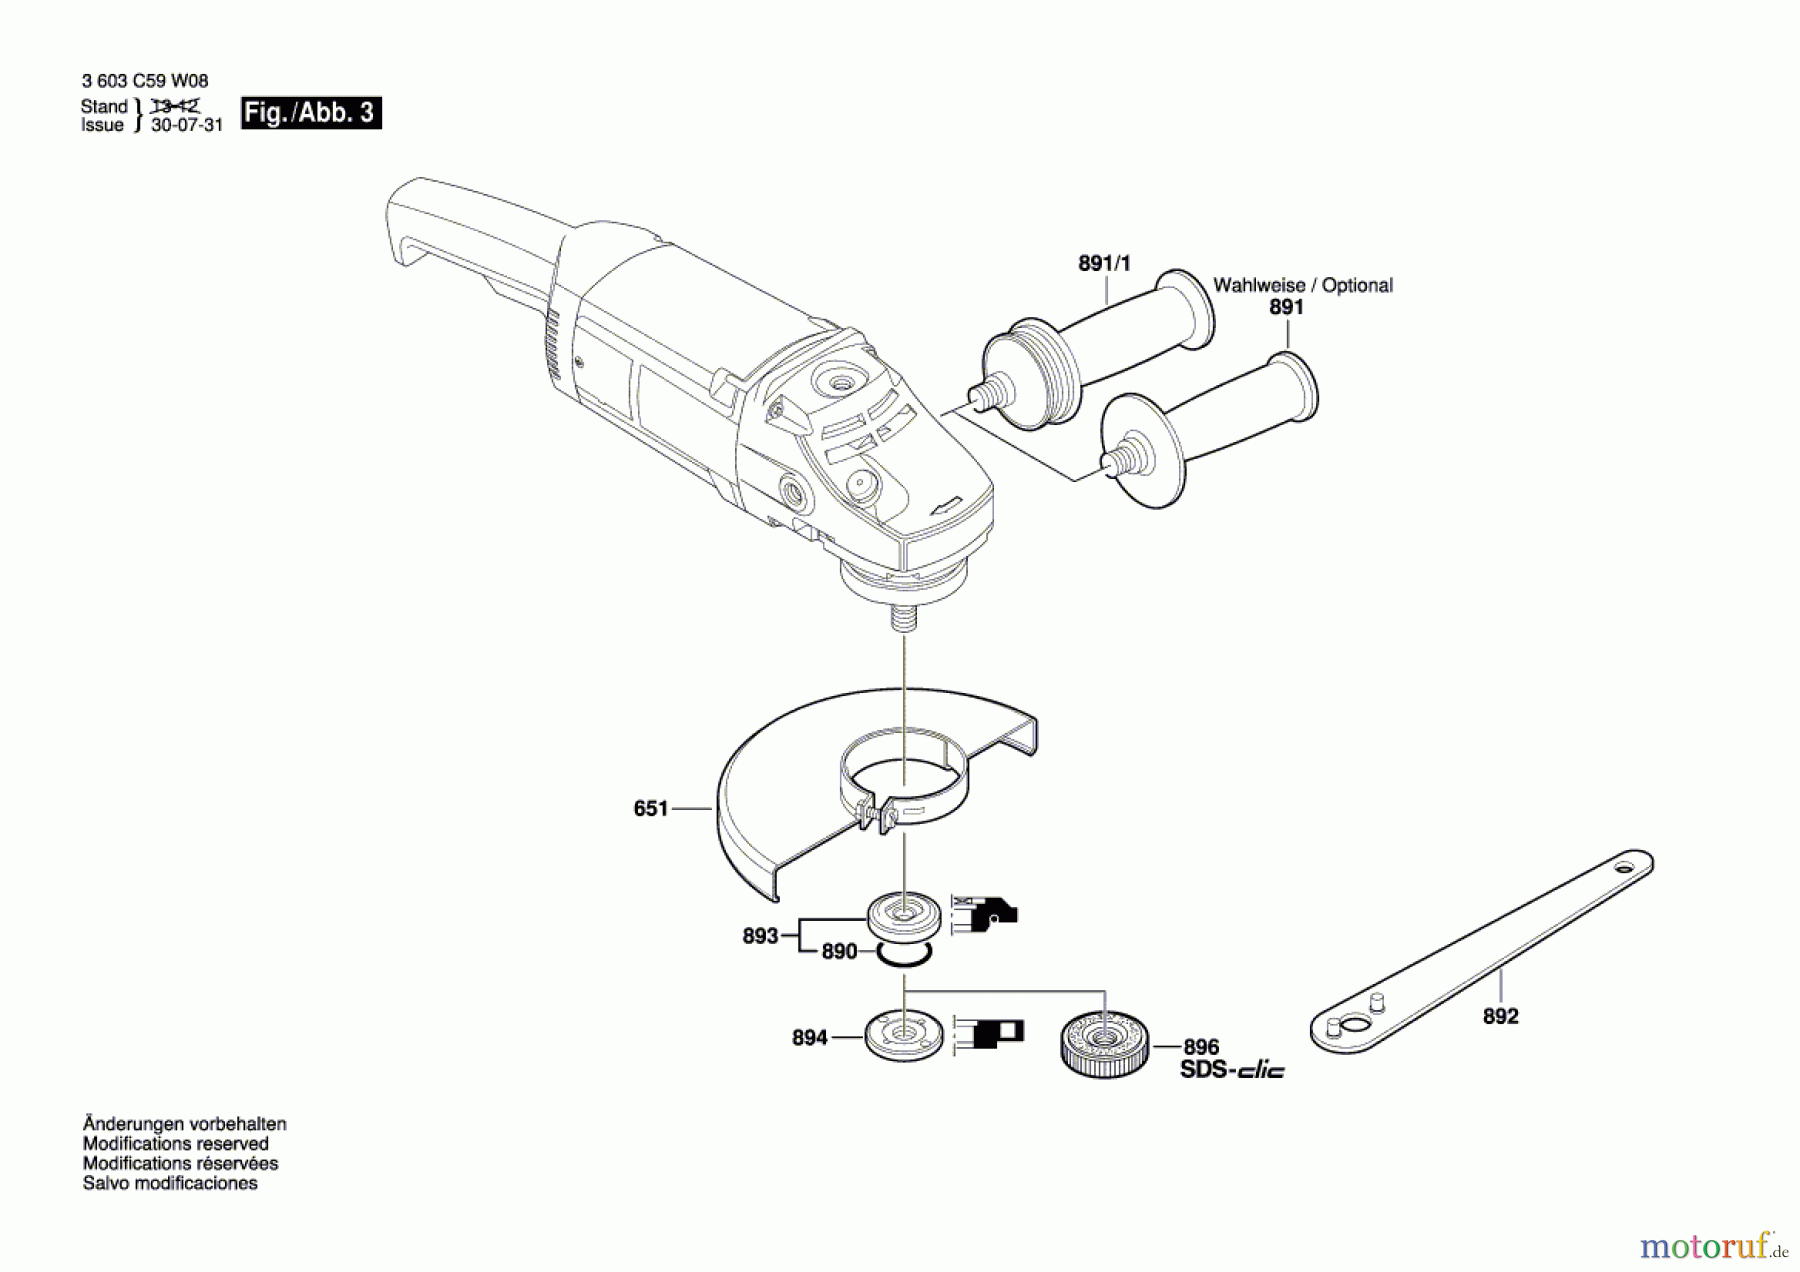  Bosch Werkzeug Winkelschleifer PWS 1900 Seite 3